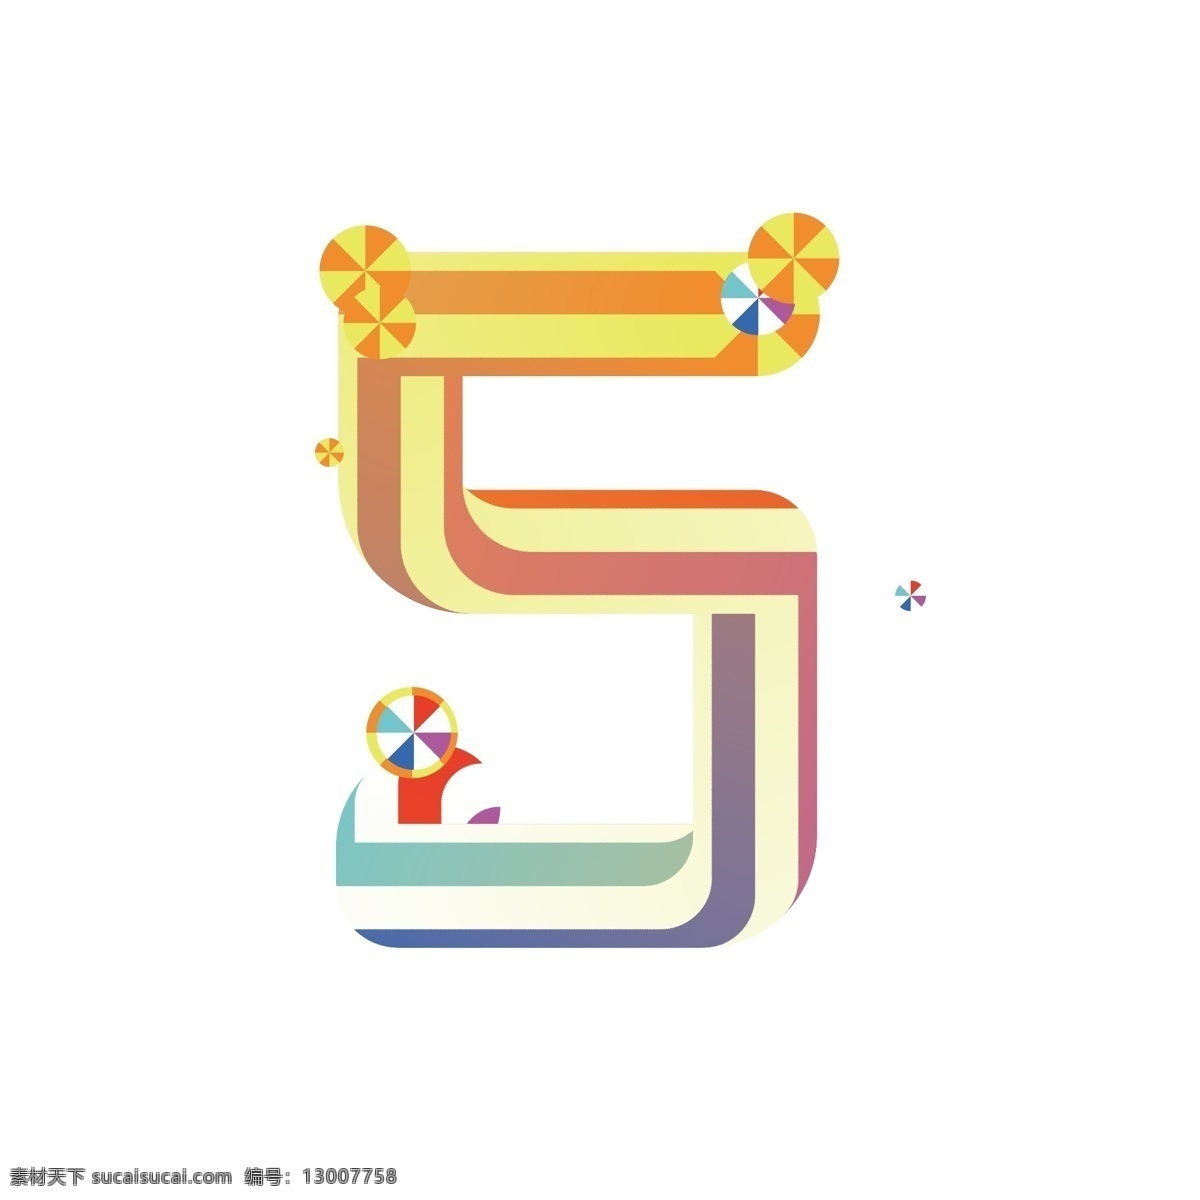 双十 倒计时 数字5 糖果字 字体设计 创意设计 彩虹字